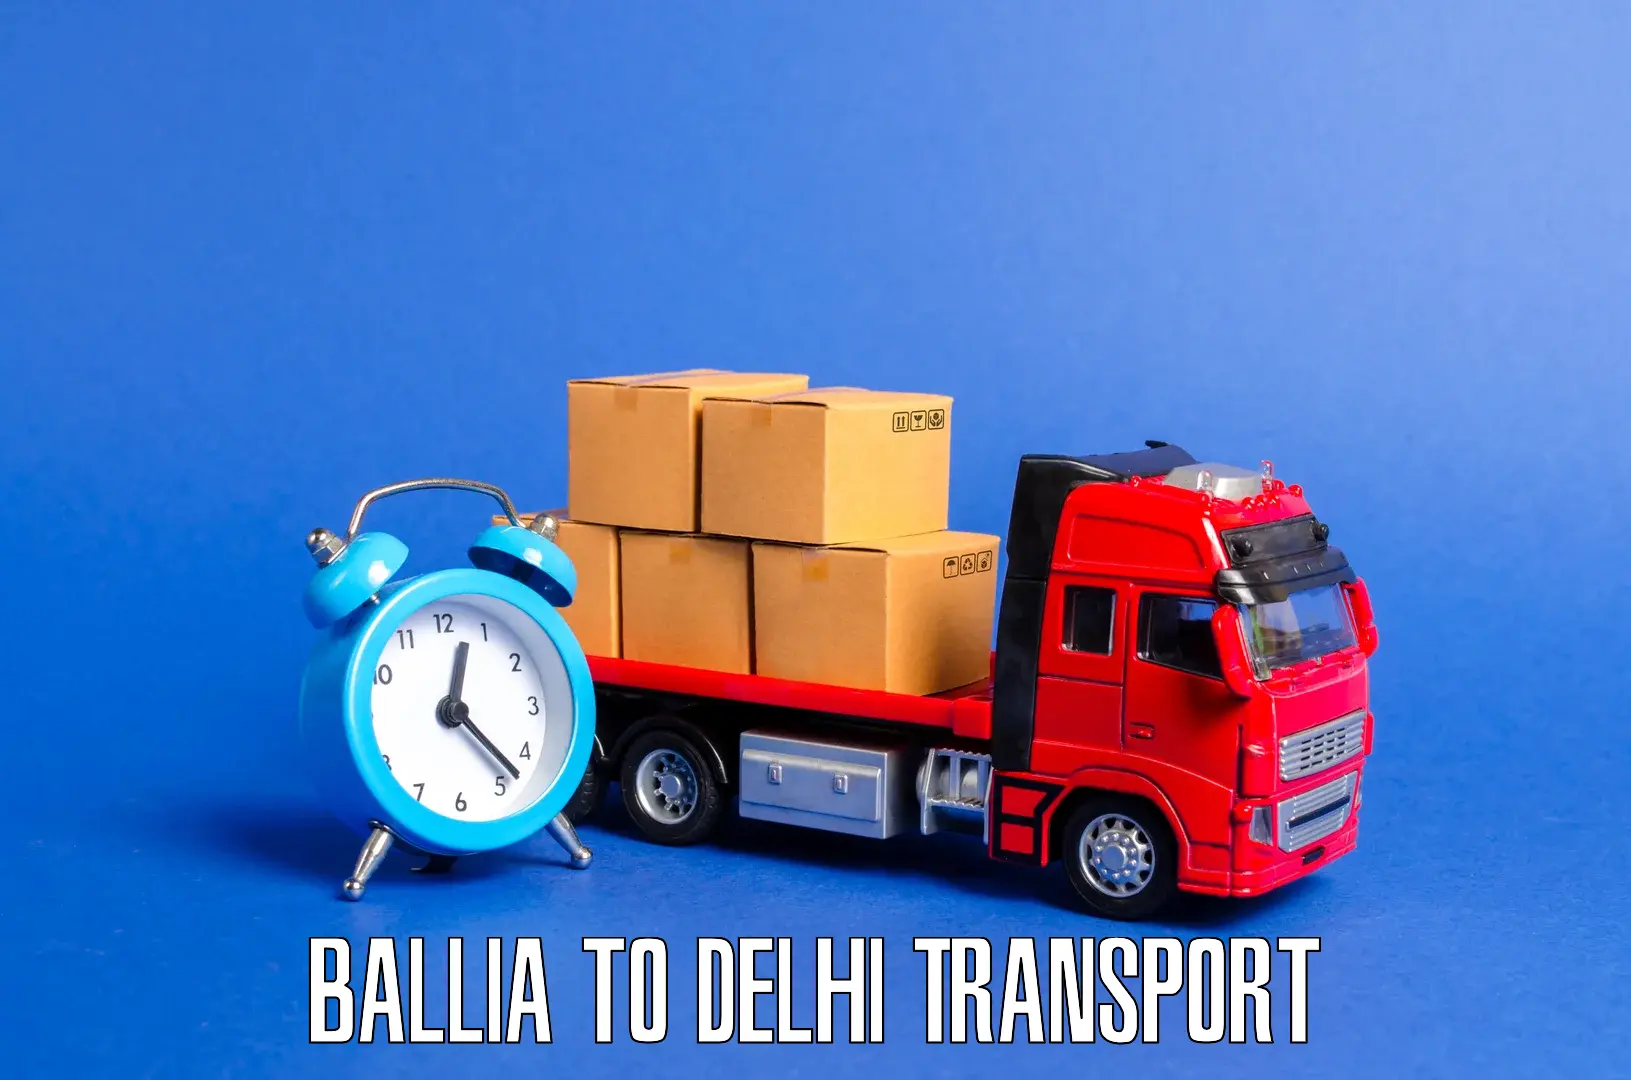 Delivery service Ballia to Delhi